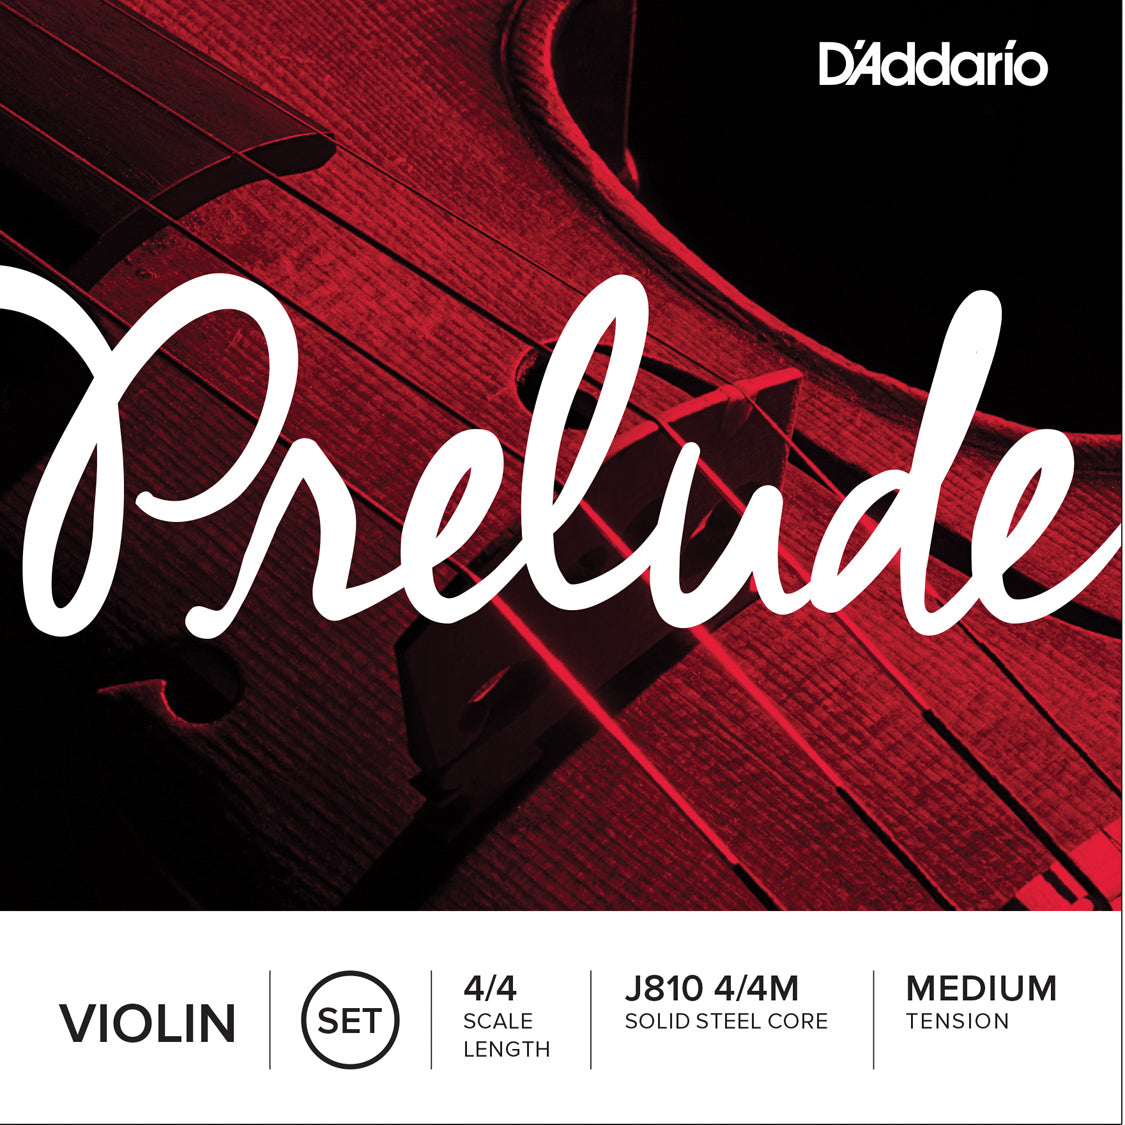 D'Addario Prelude Violin String Set 4/4 Scale Medium Tension